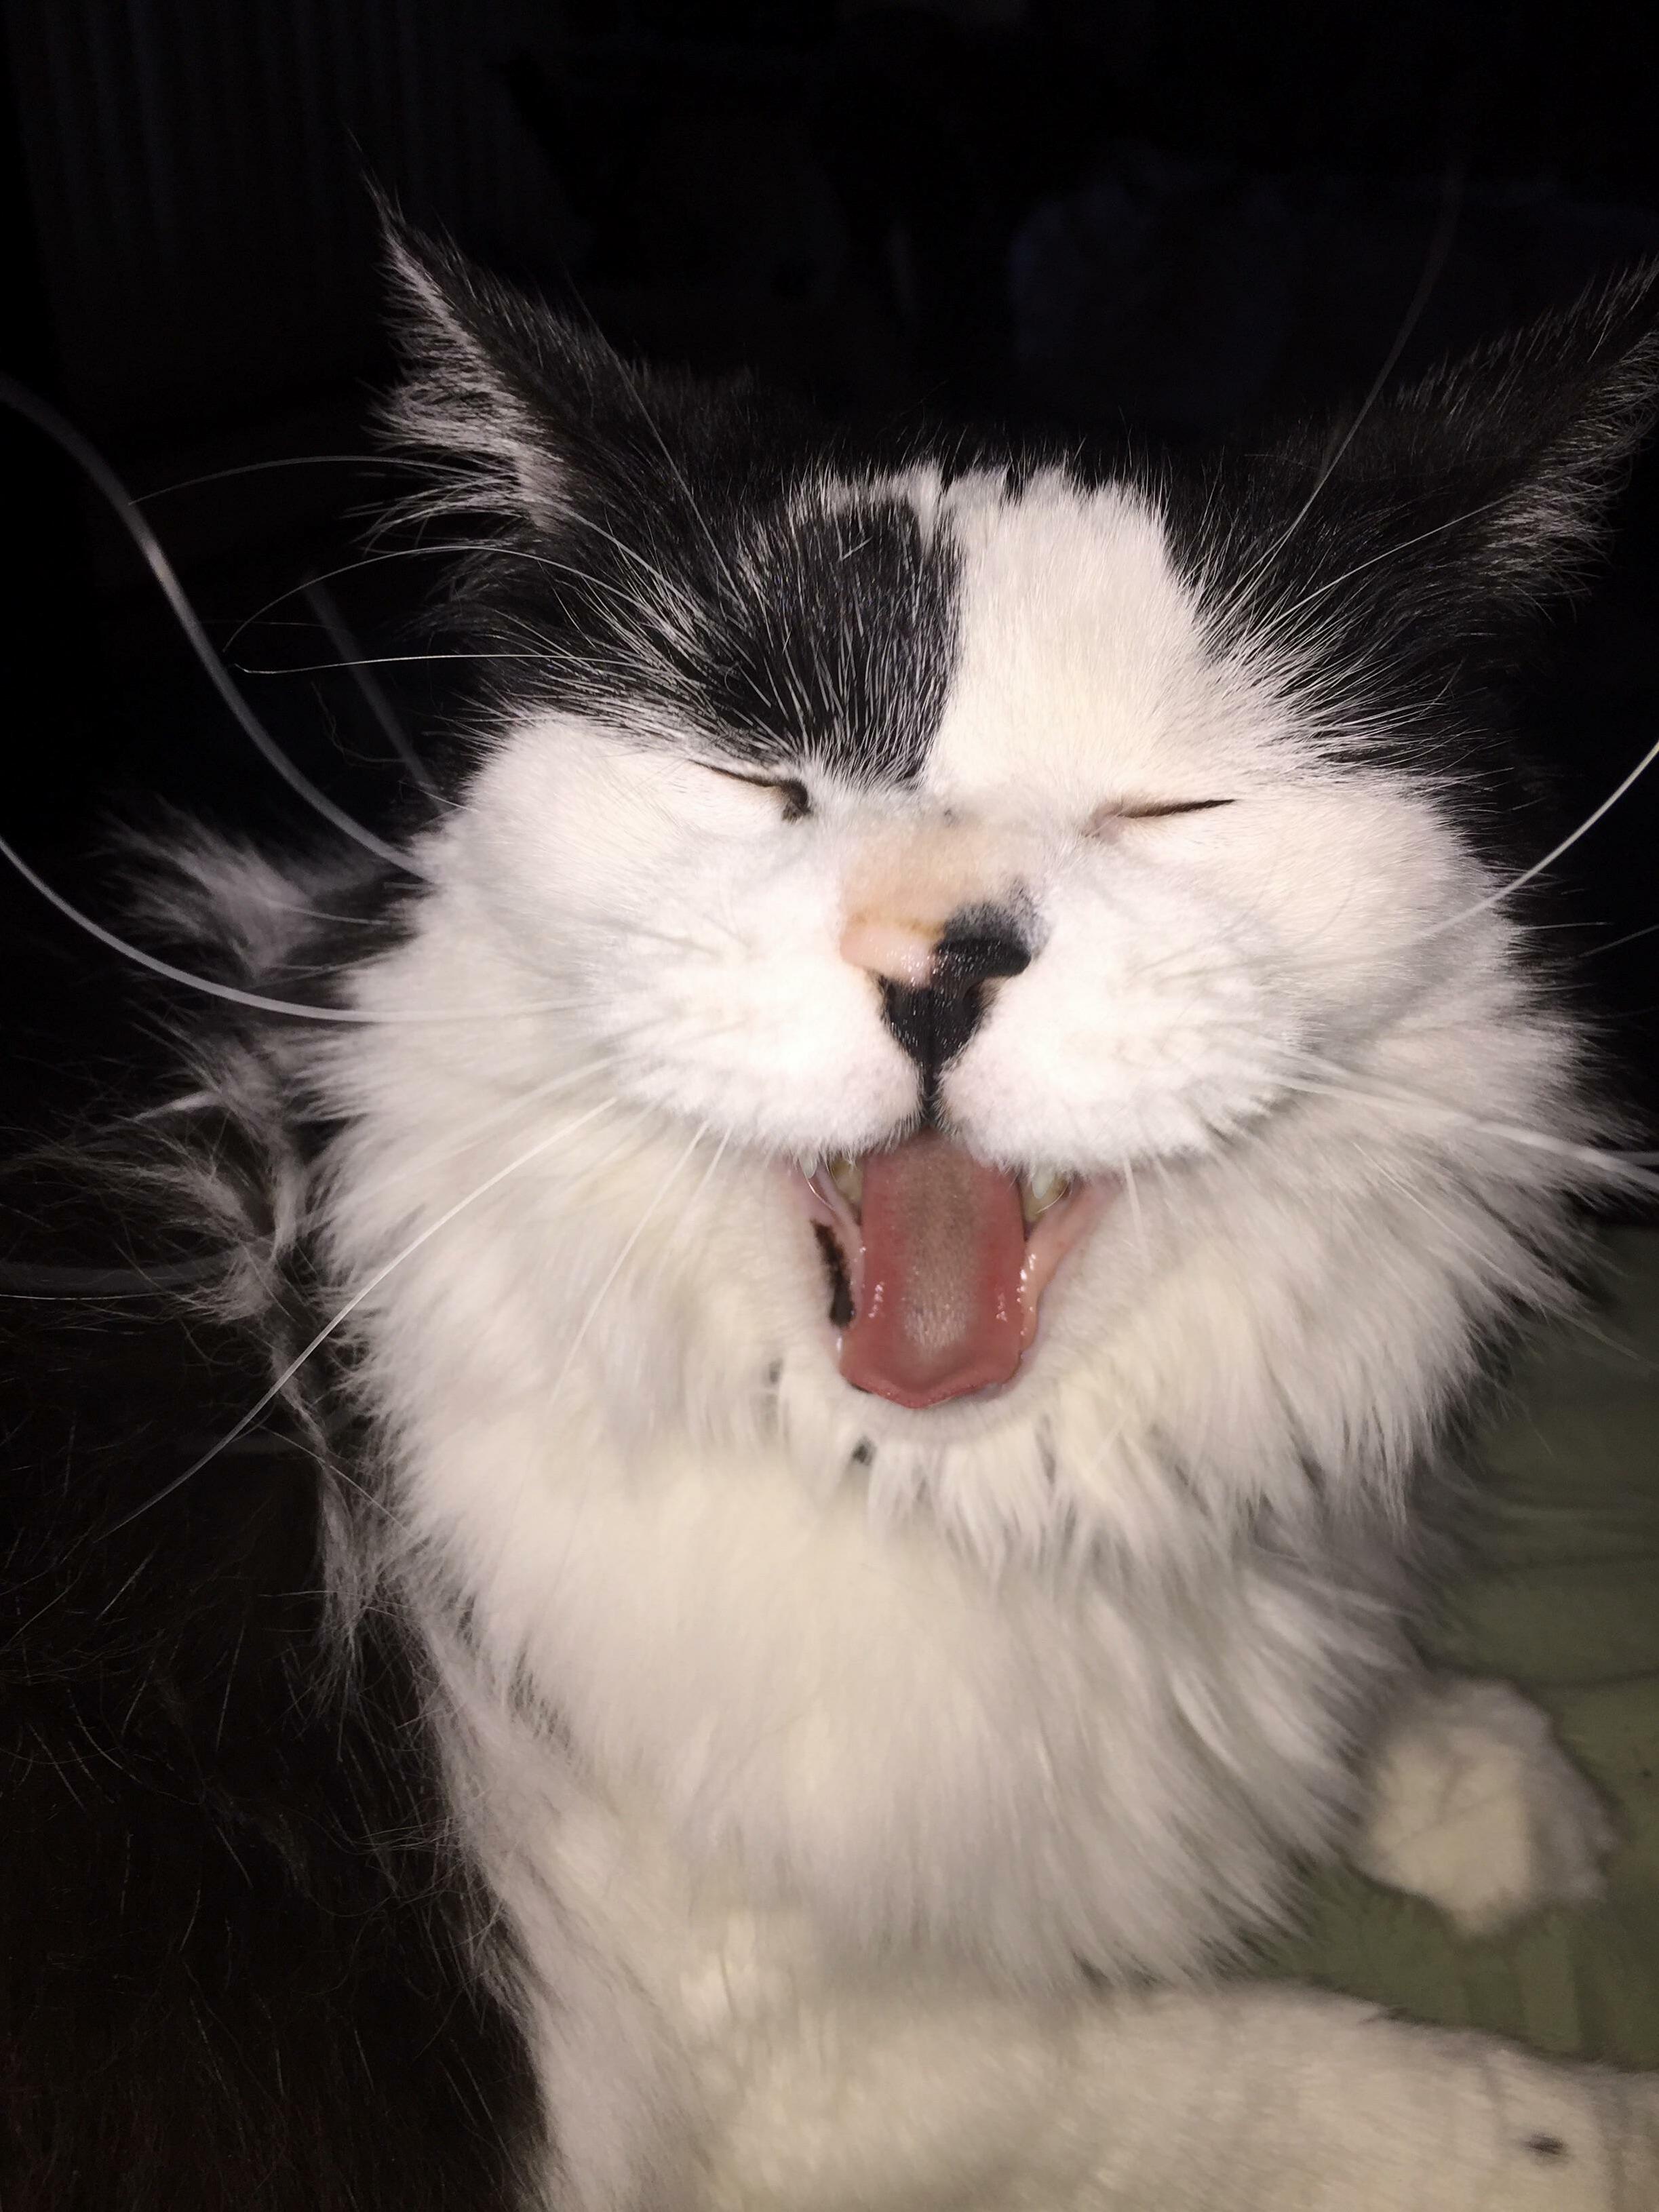 Caught him yawning! 